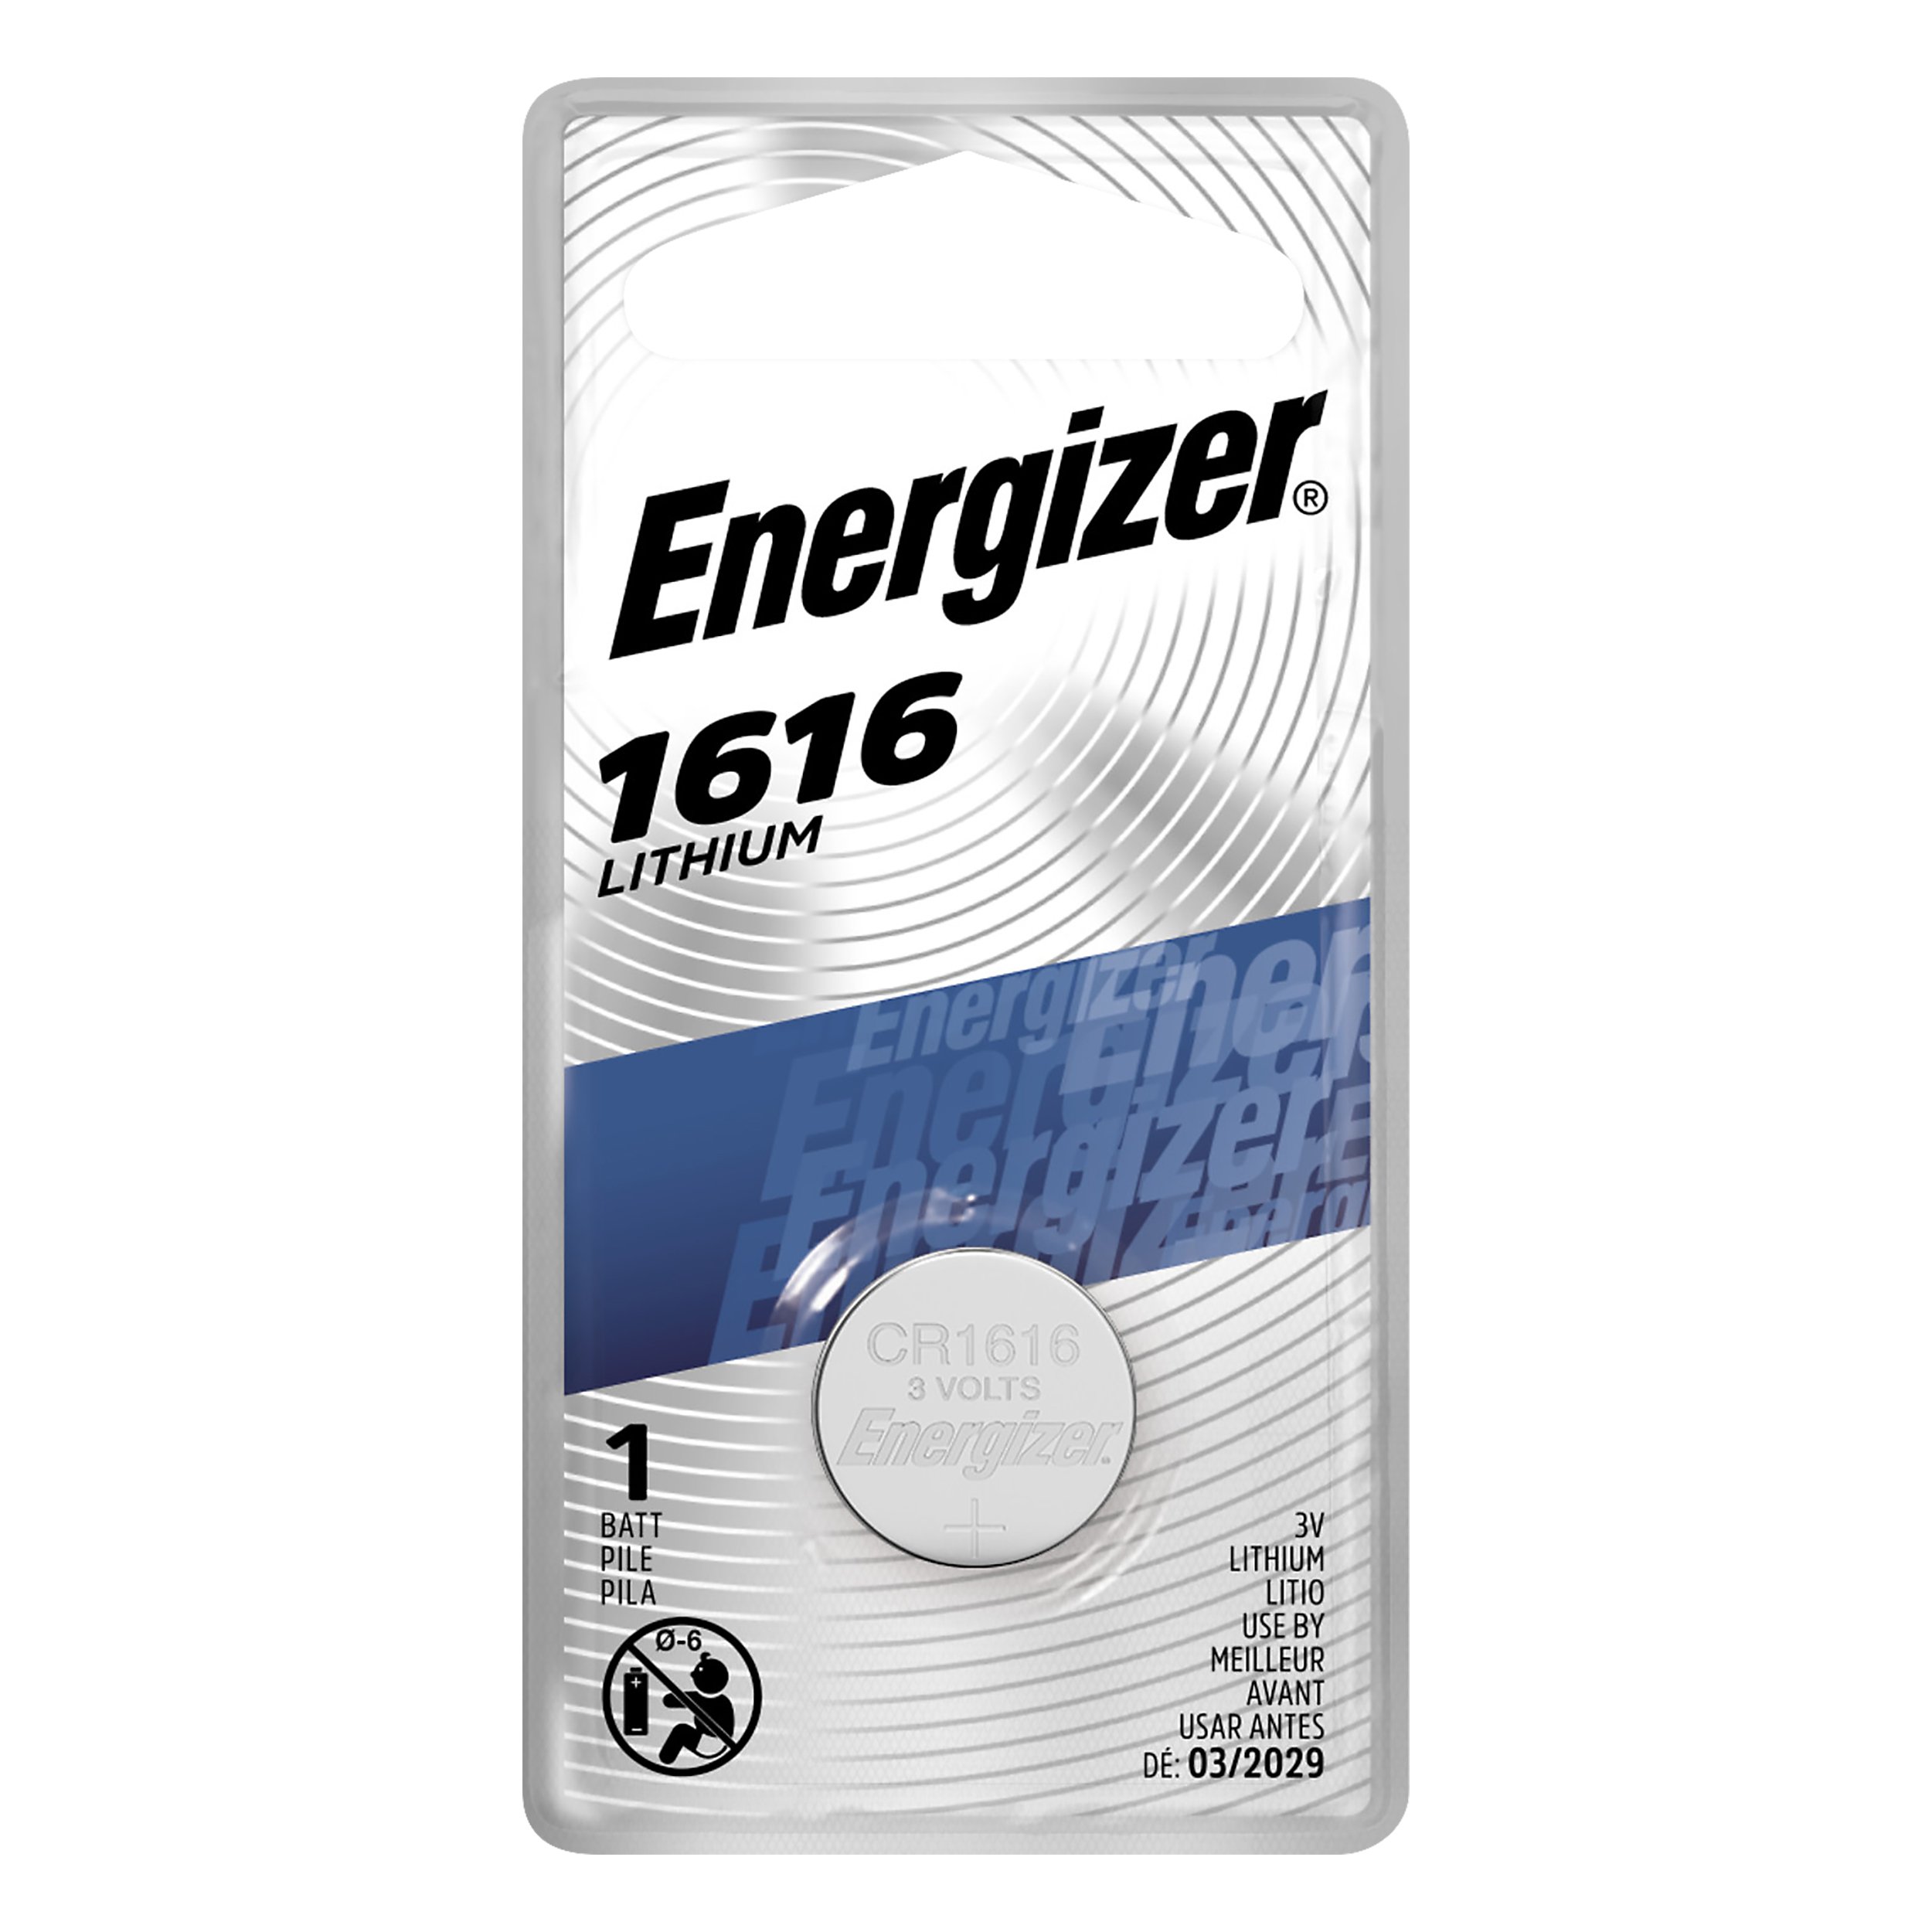 Positief Jongleren Overstijgen Energizer CR1616 Lithium Coin Battery - Shop Batteries at H-E-B